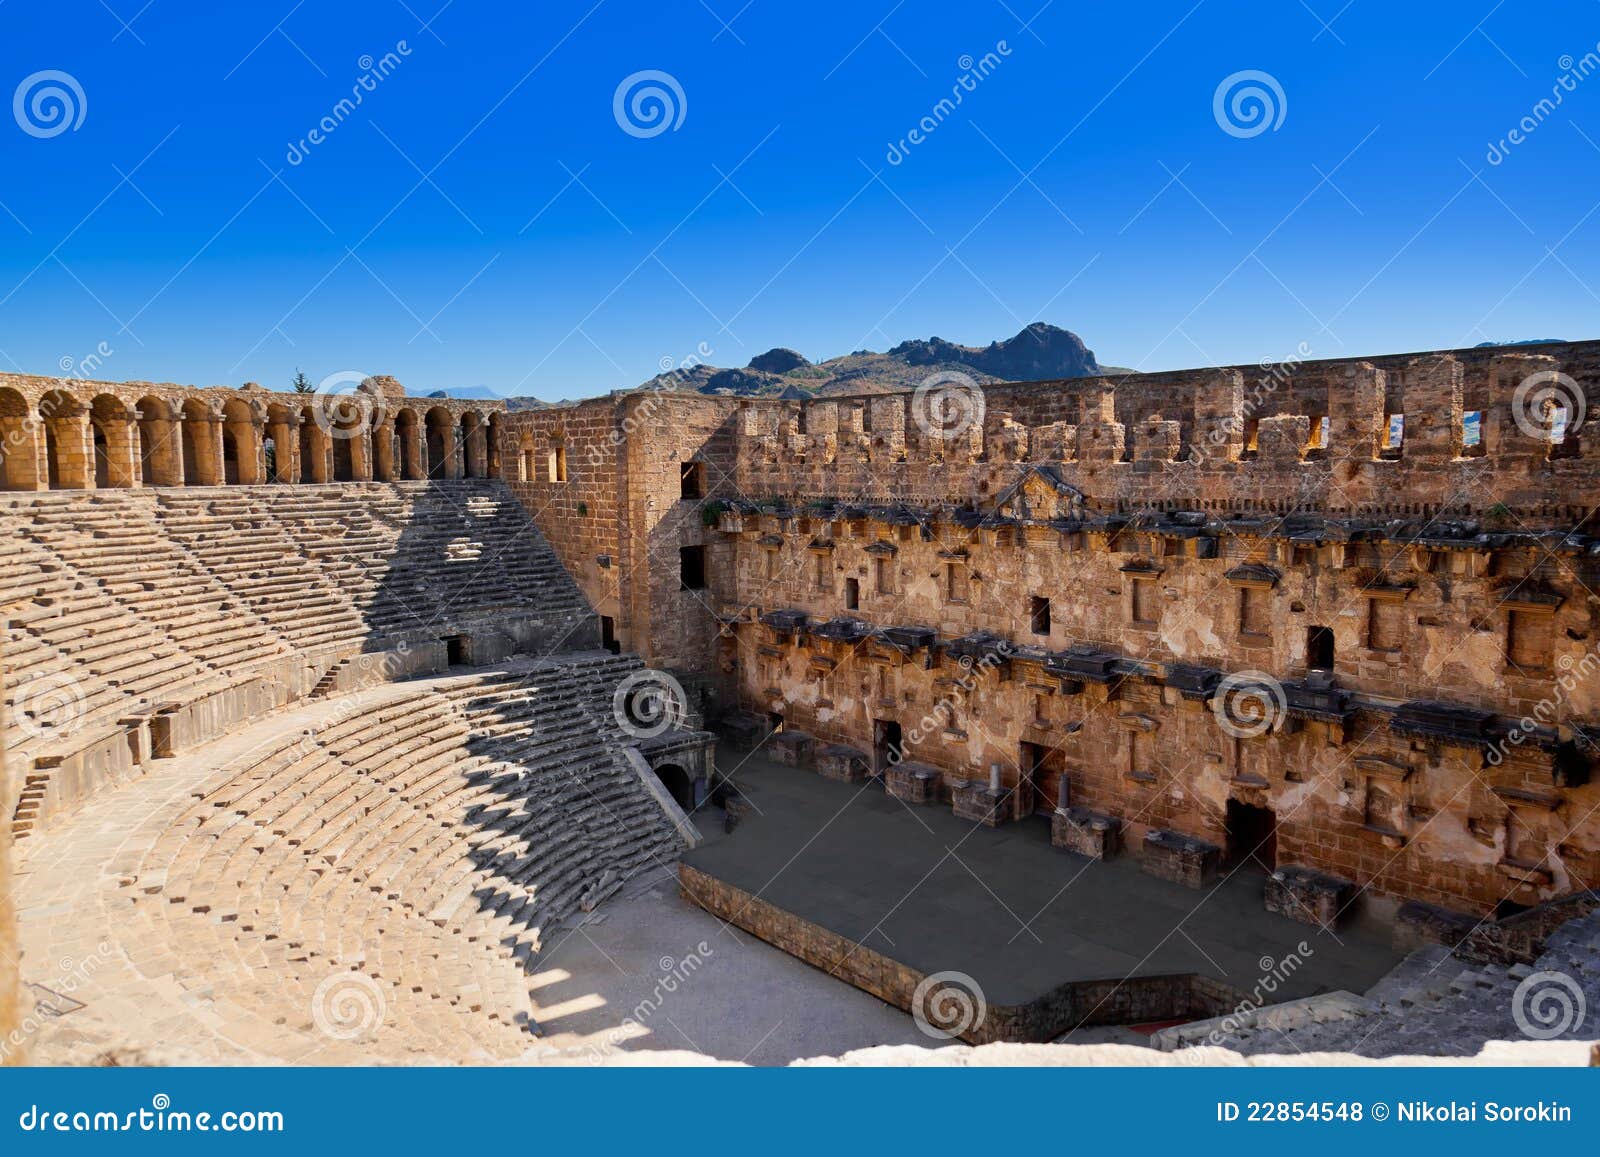 old amphitheater aspendos in antalya, turkey